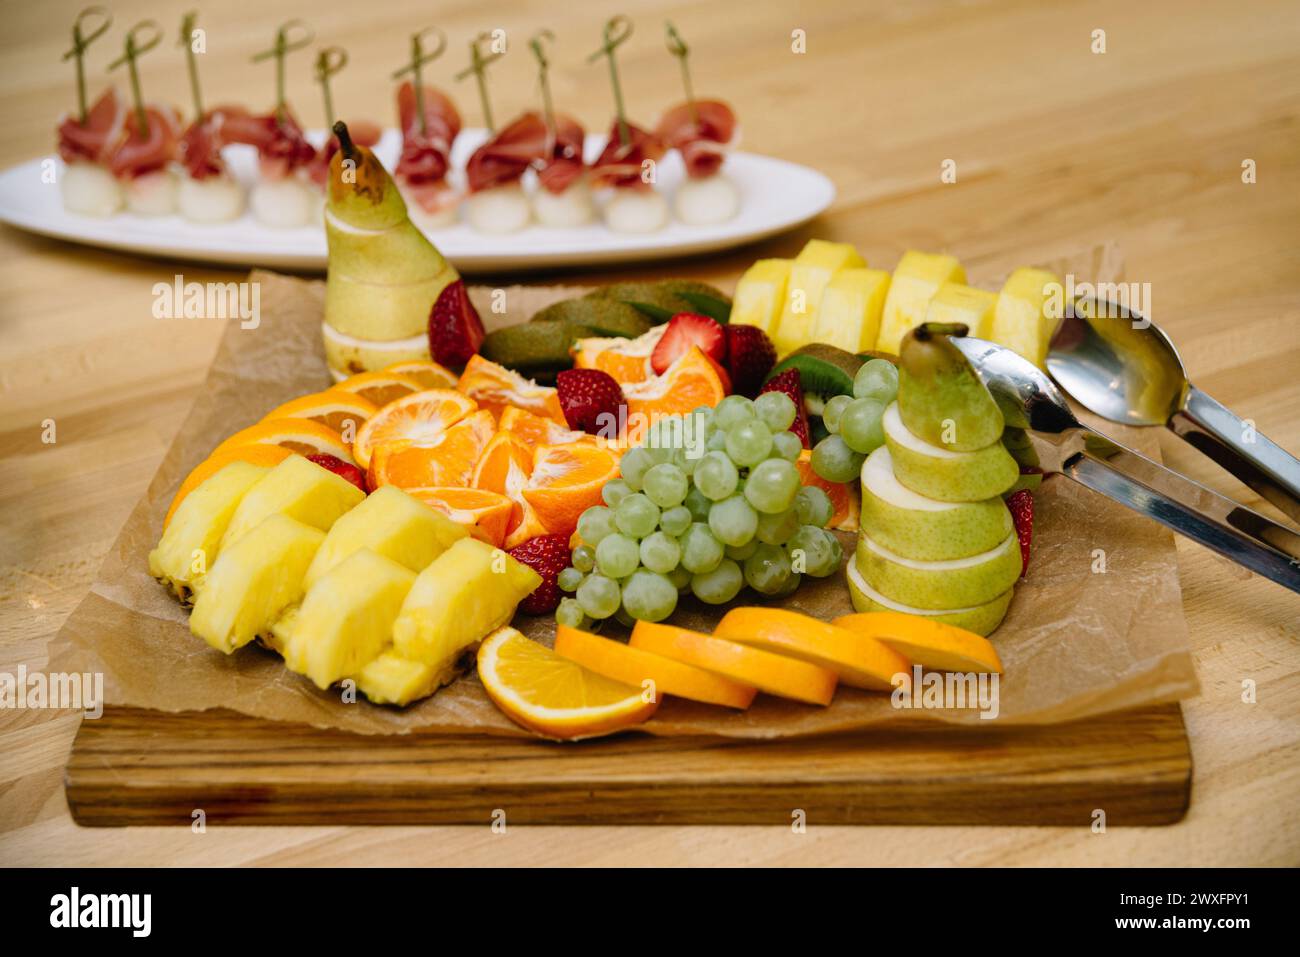 Eine bunte Präsentation von geschnittenem frischem Obst auf einem rustikalen Holzbrett, perfekt für einen gesunden Party-Snack oder ein Dessert Stockfoto